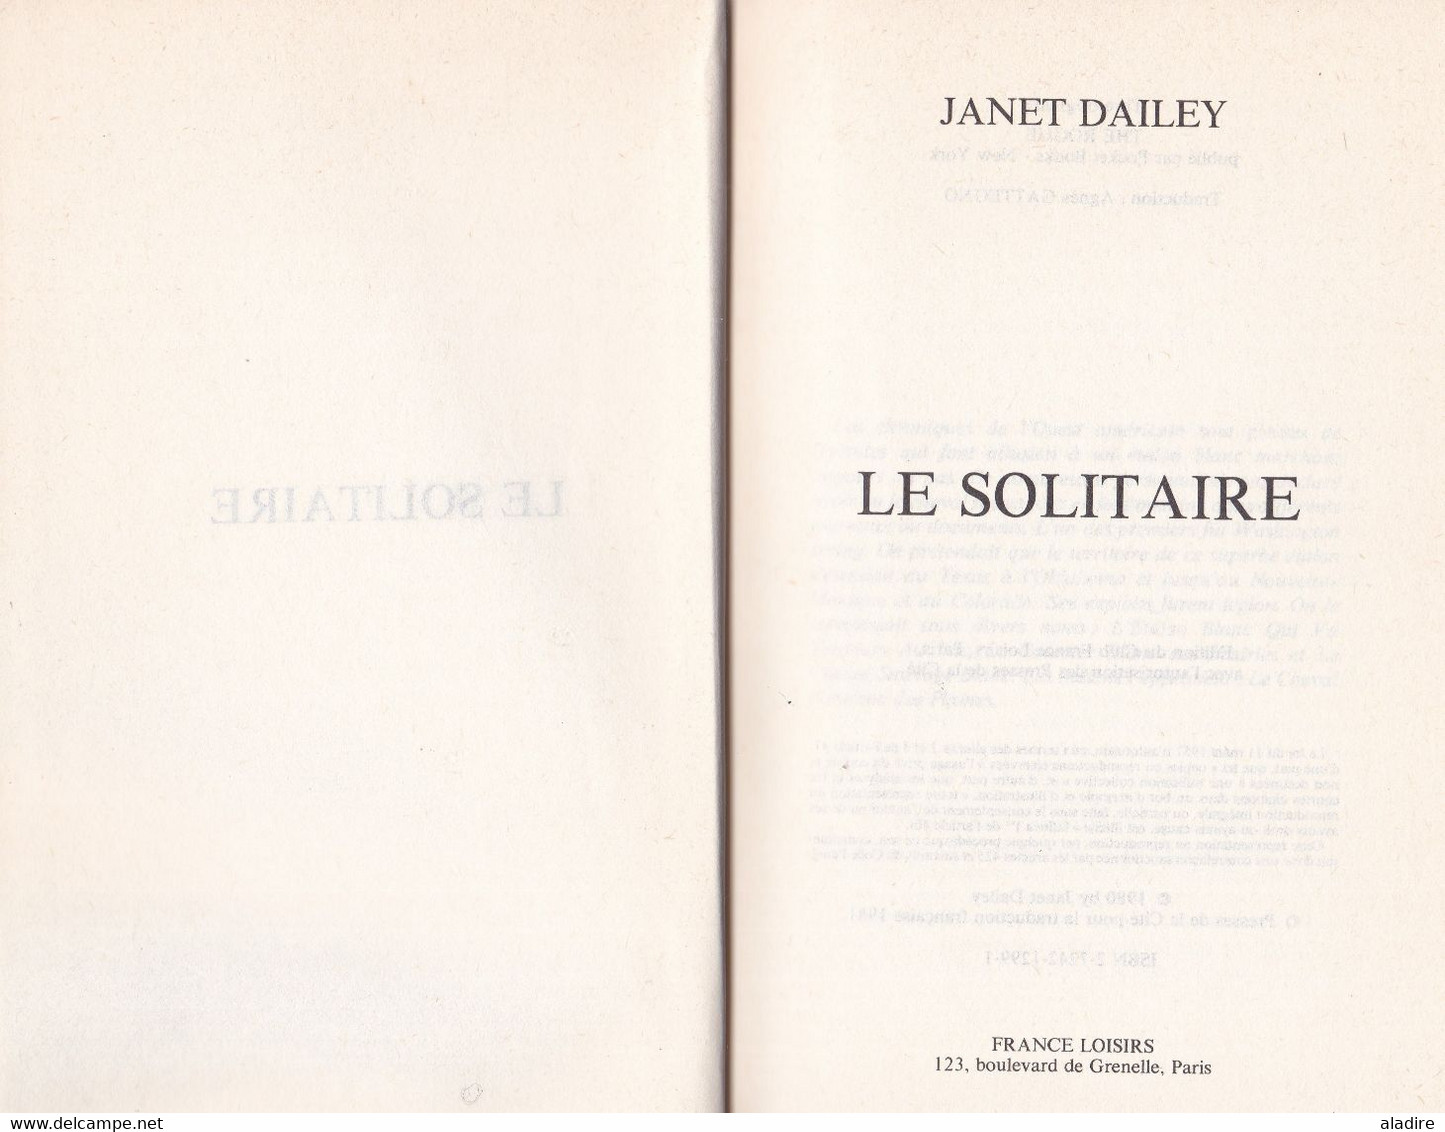 Janet Dailey -  Le Solitaire,  Roman, 1980 - Relié - 319 Pages - € 1.00 - Aventure